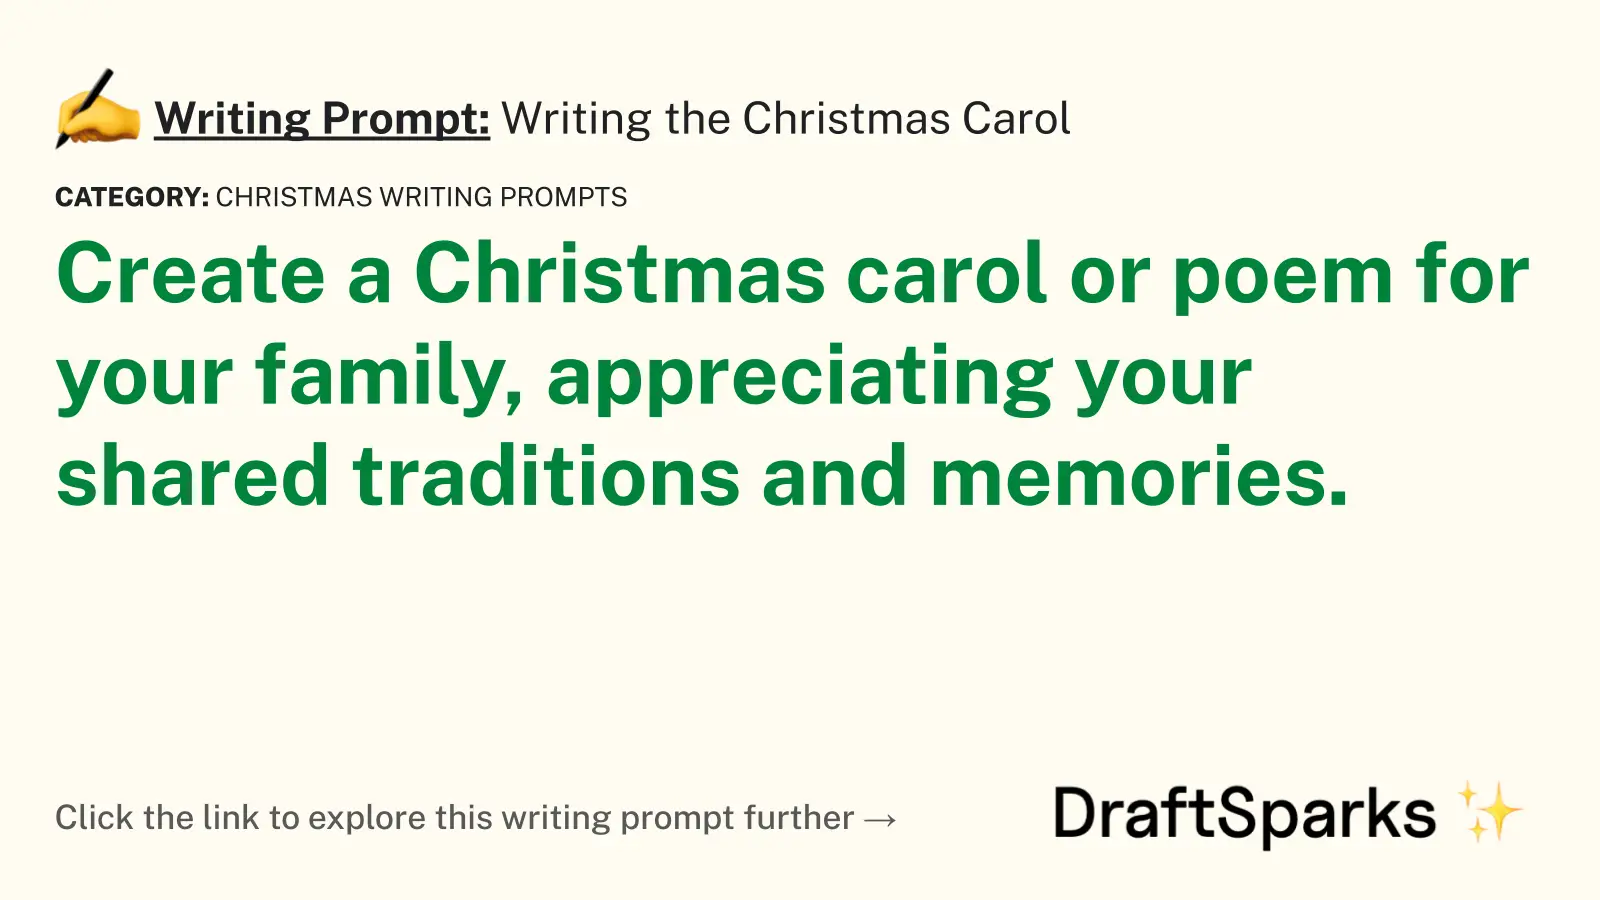 Writing the Christmas Carol